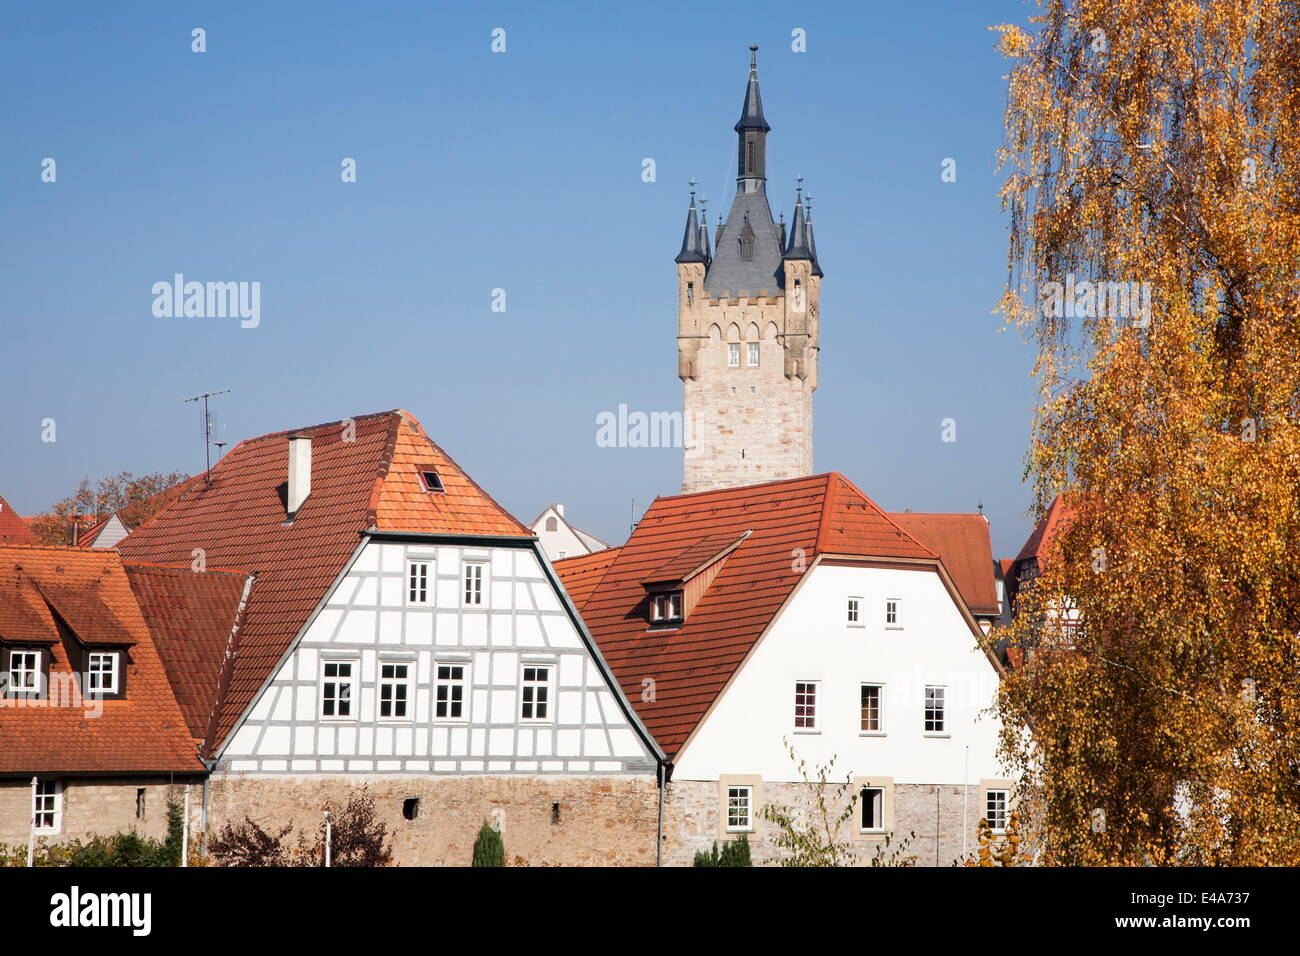 Altstadt mit Blauer Turm Tower, Bad Wimpfen, Neckartal-Tal, Baden-Württemberg, Deutschland, Europa Stockfoto